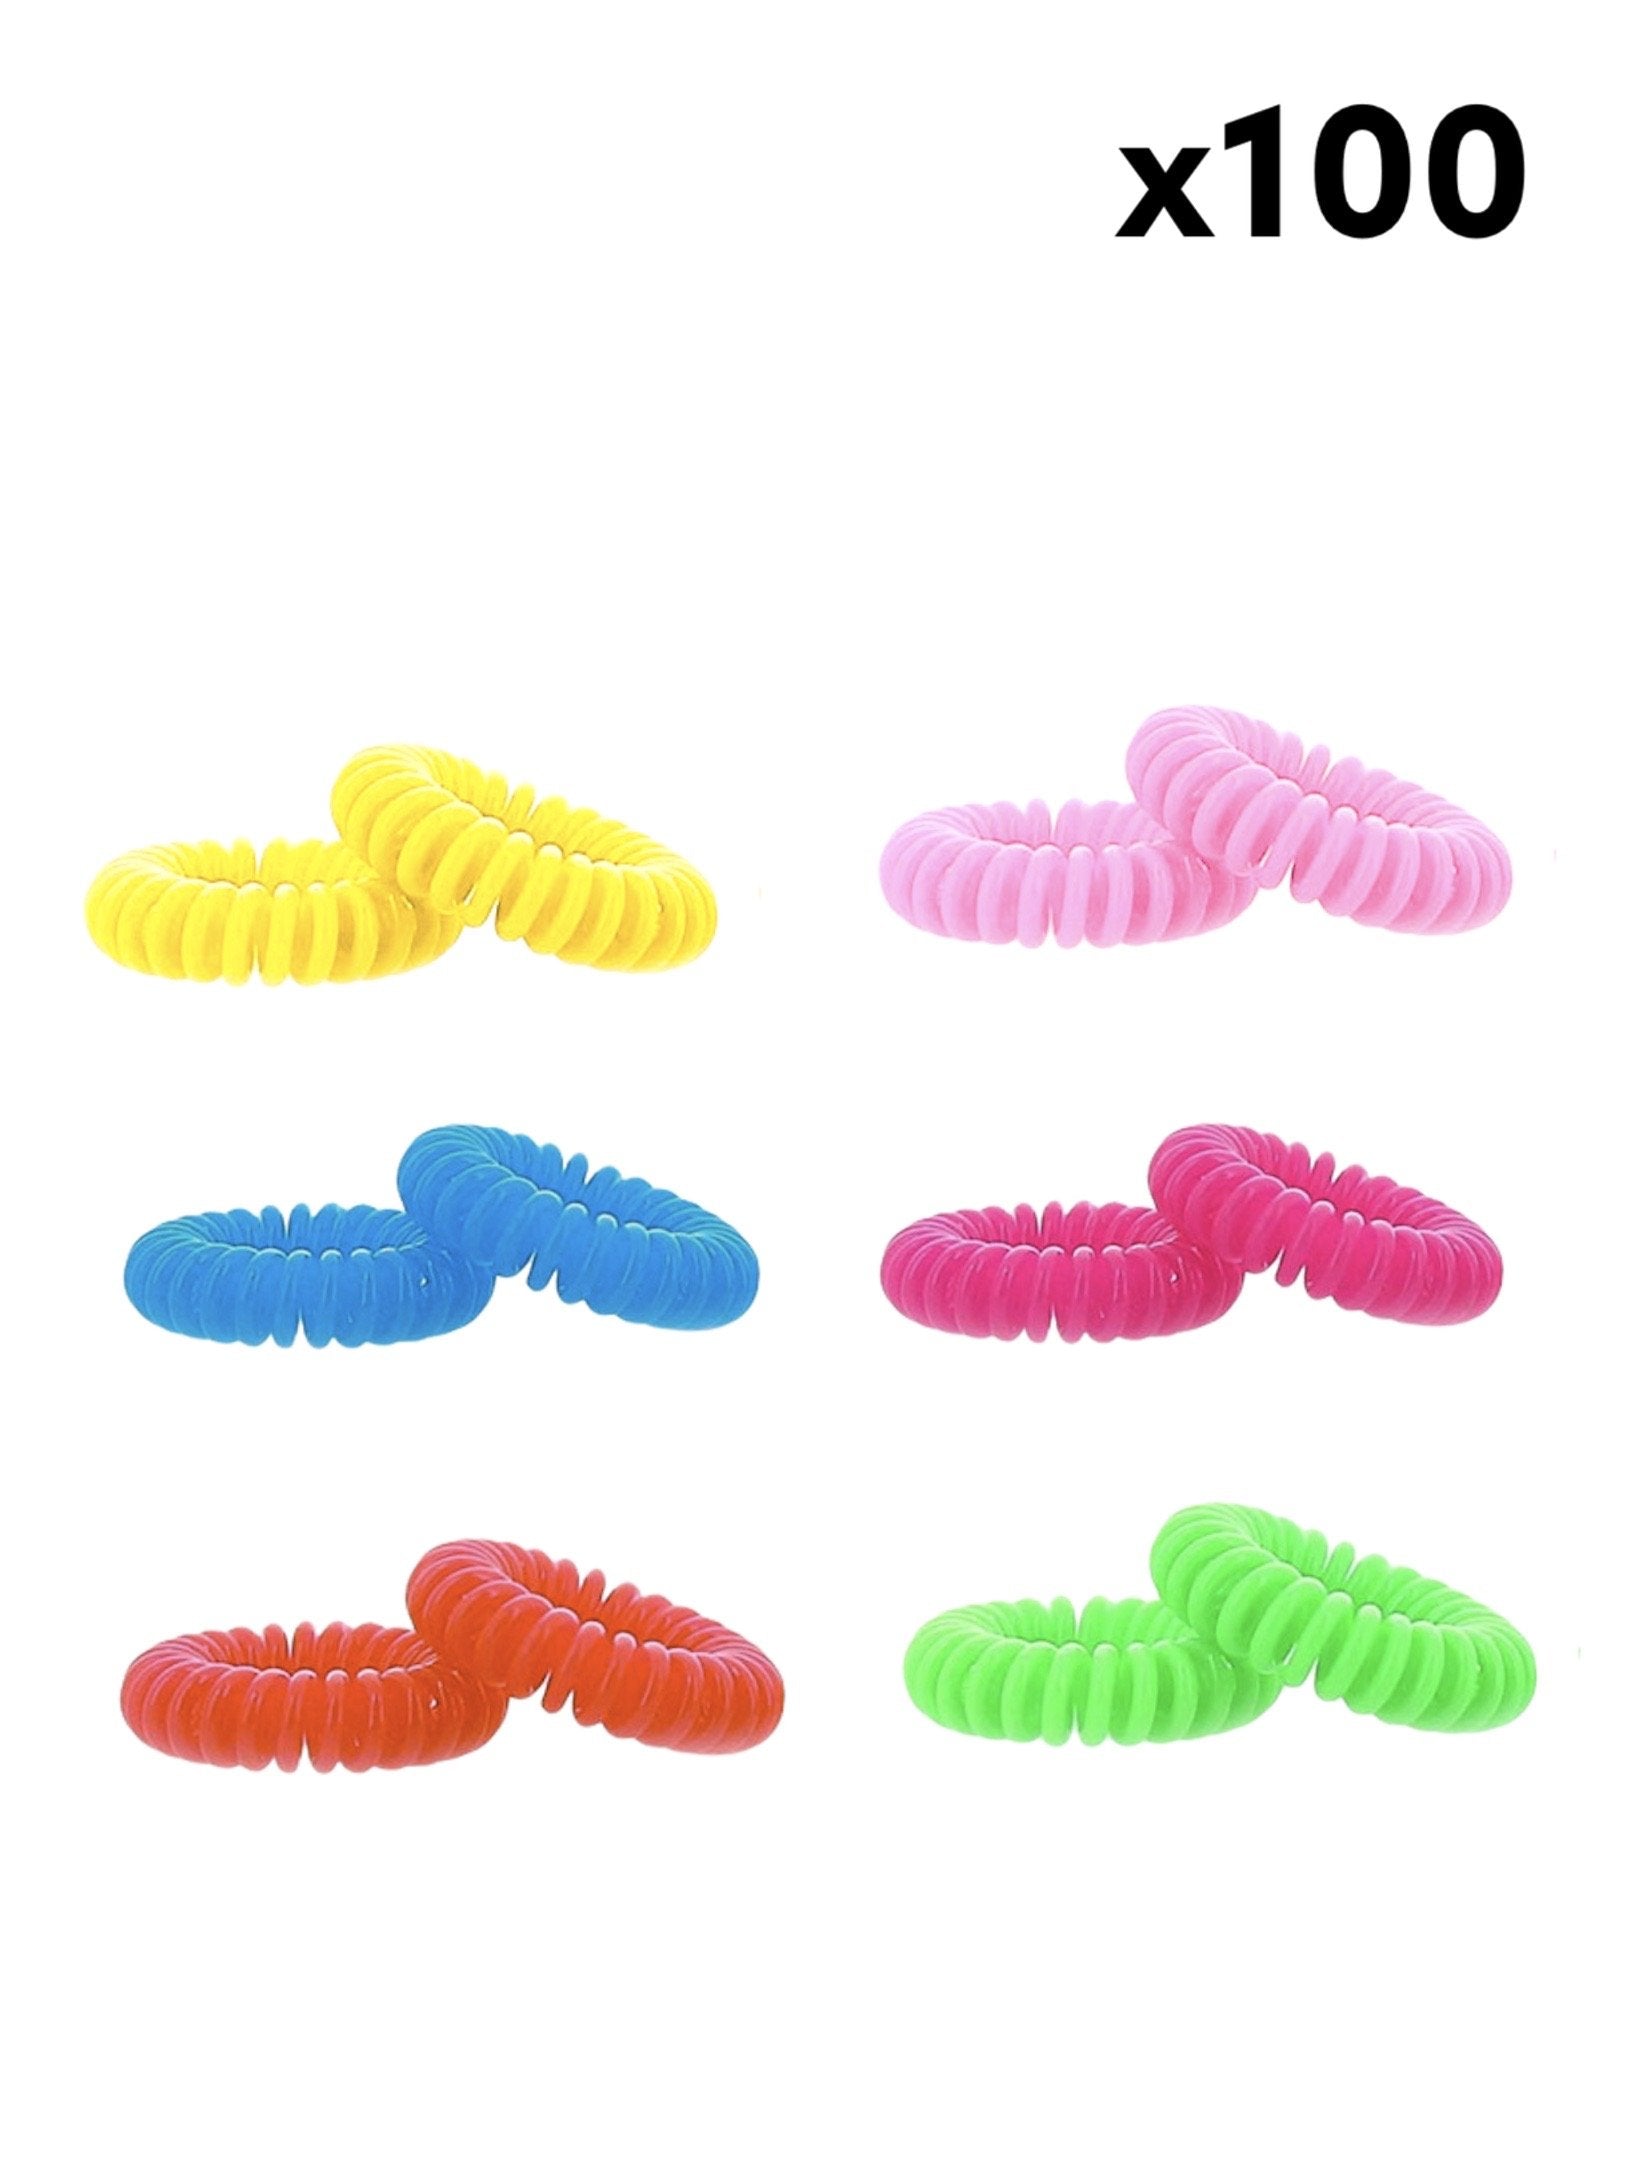 Élastiques cheveux spirales couleur (x100) 0,09€/unité | Grossiste-pro